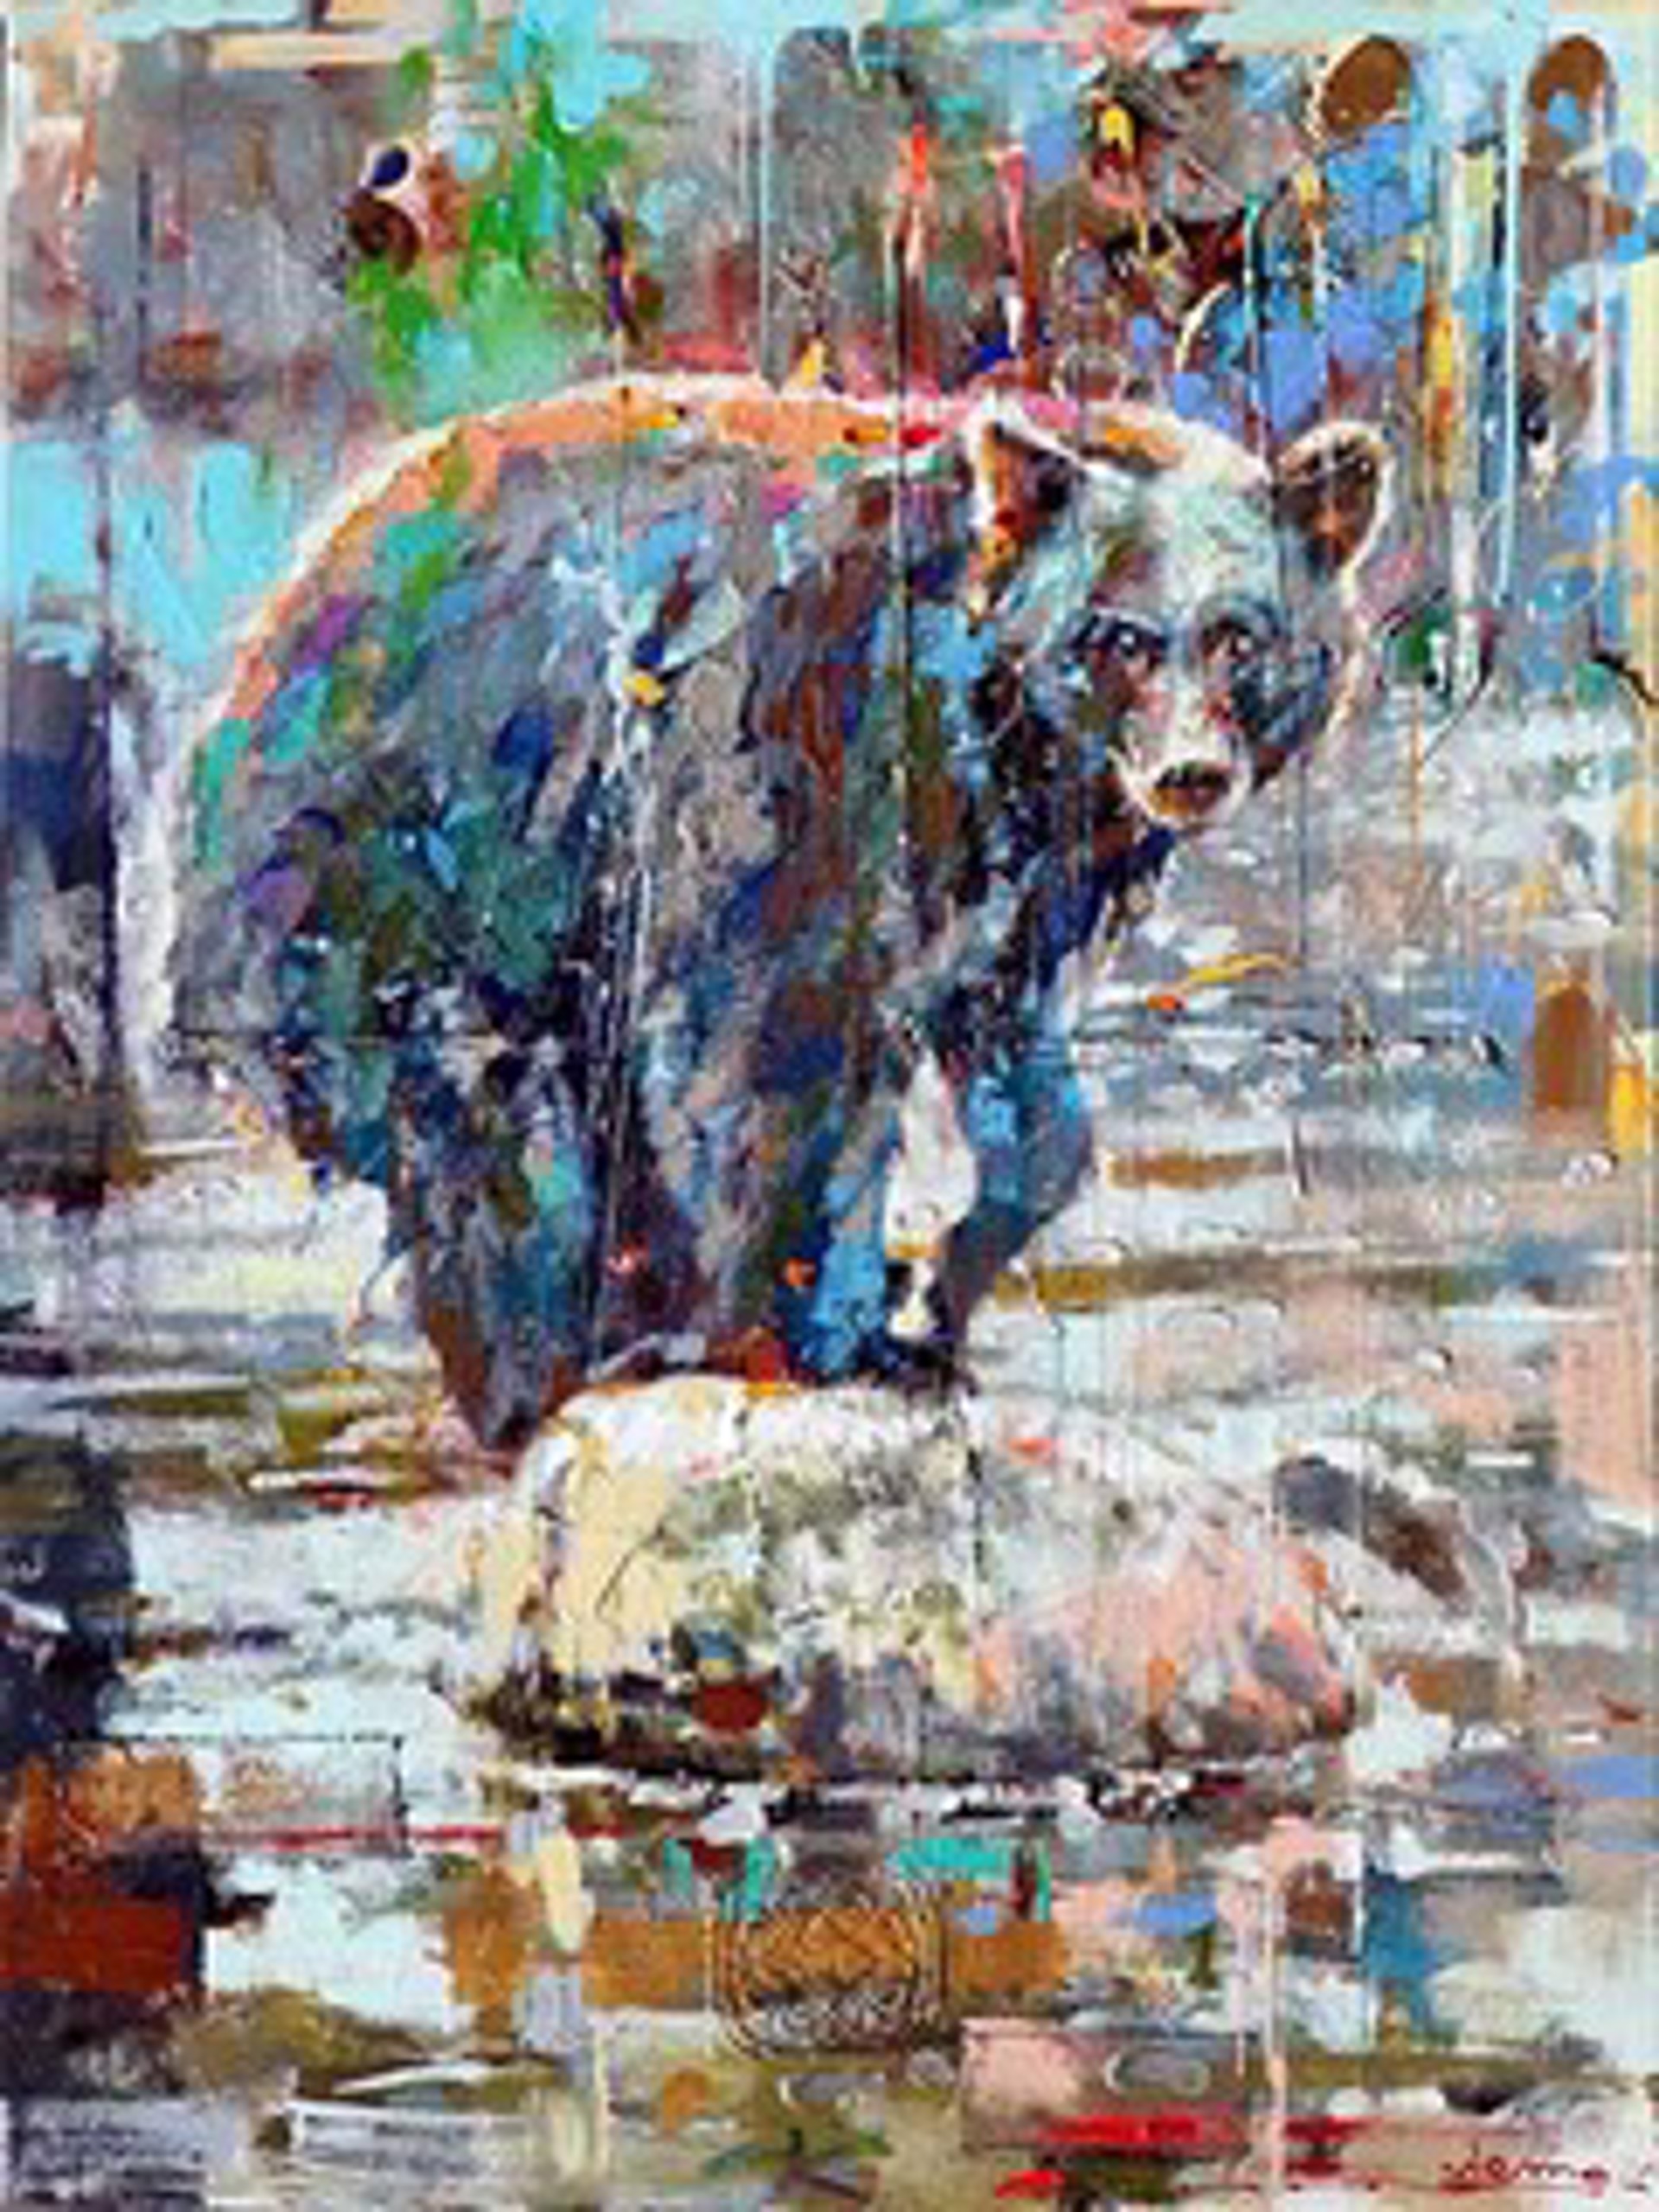 Bear in River 188365 by Victor Colesnicenco (Nemo)